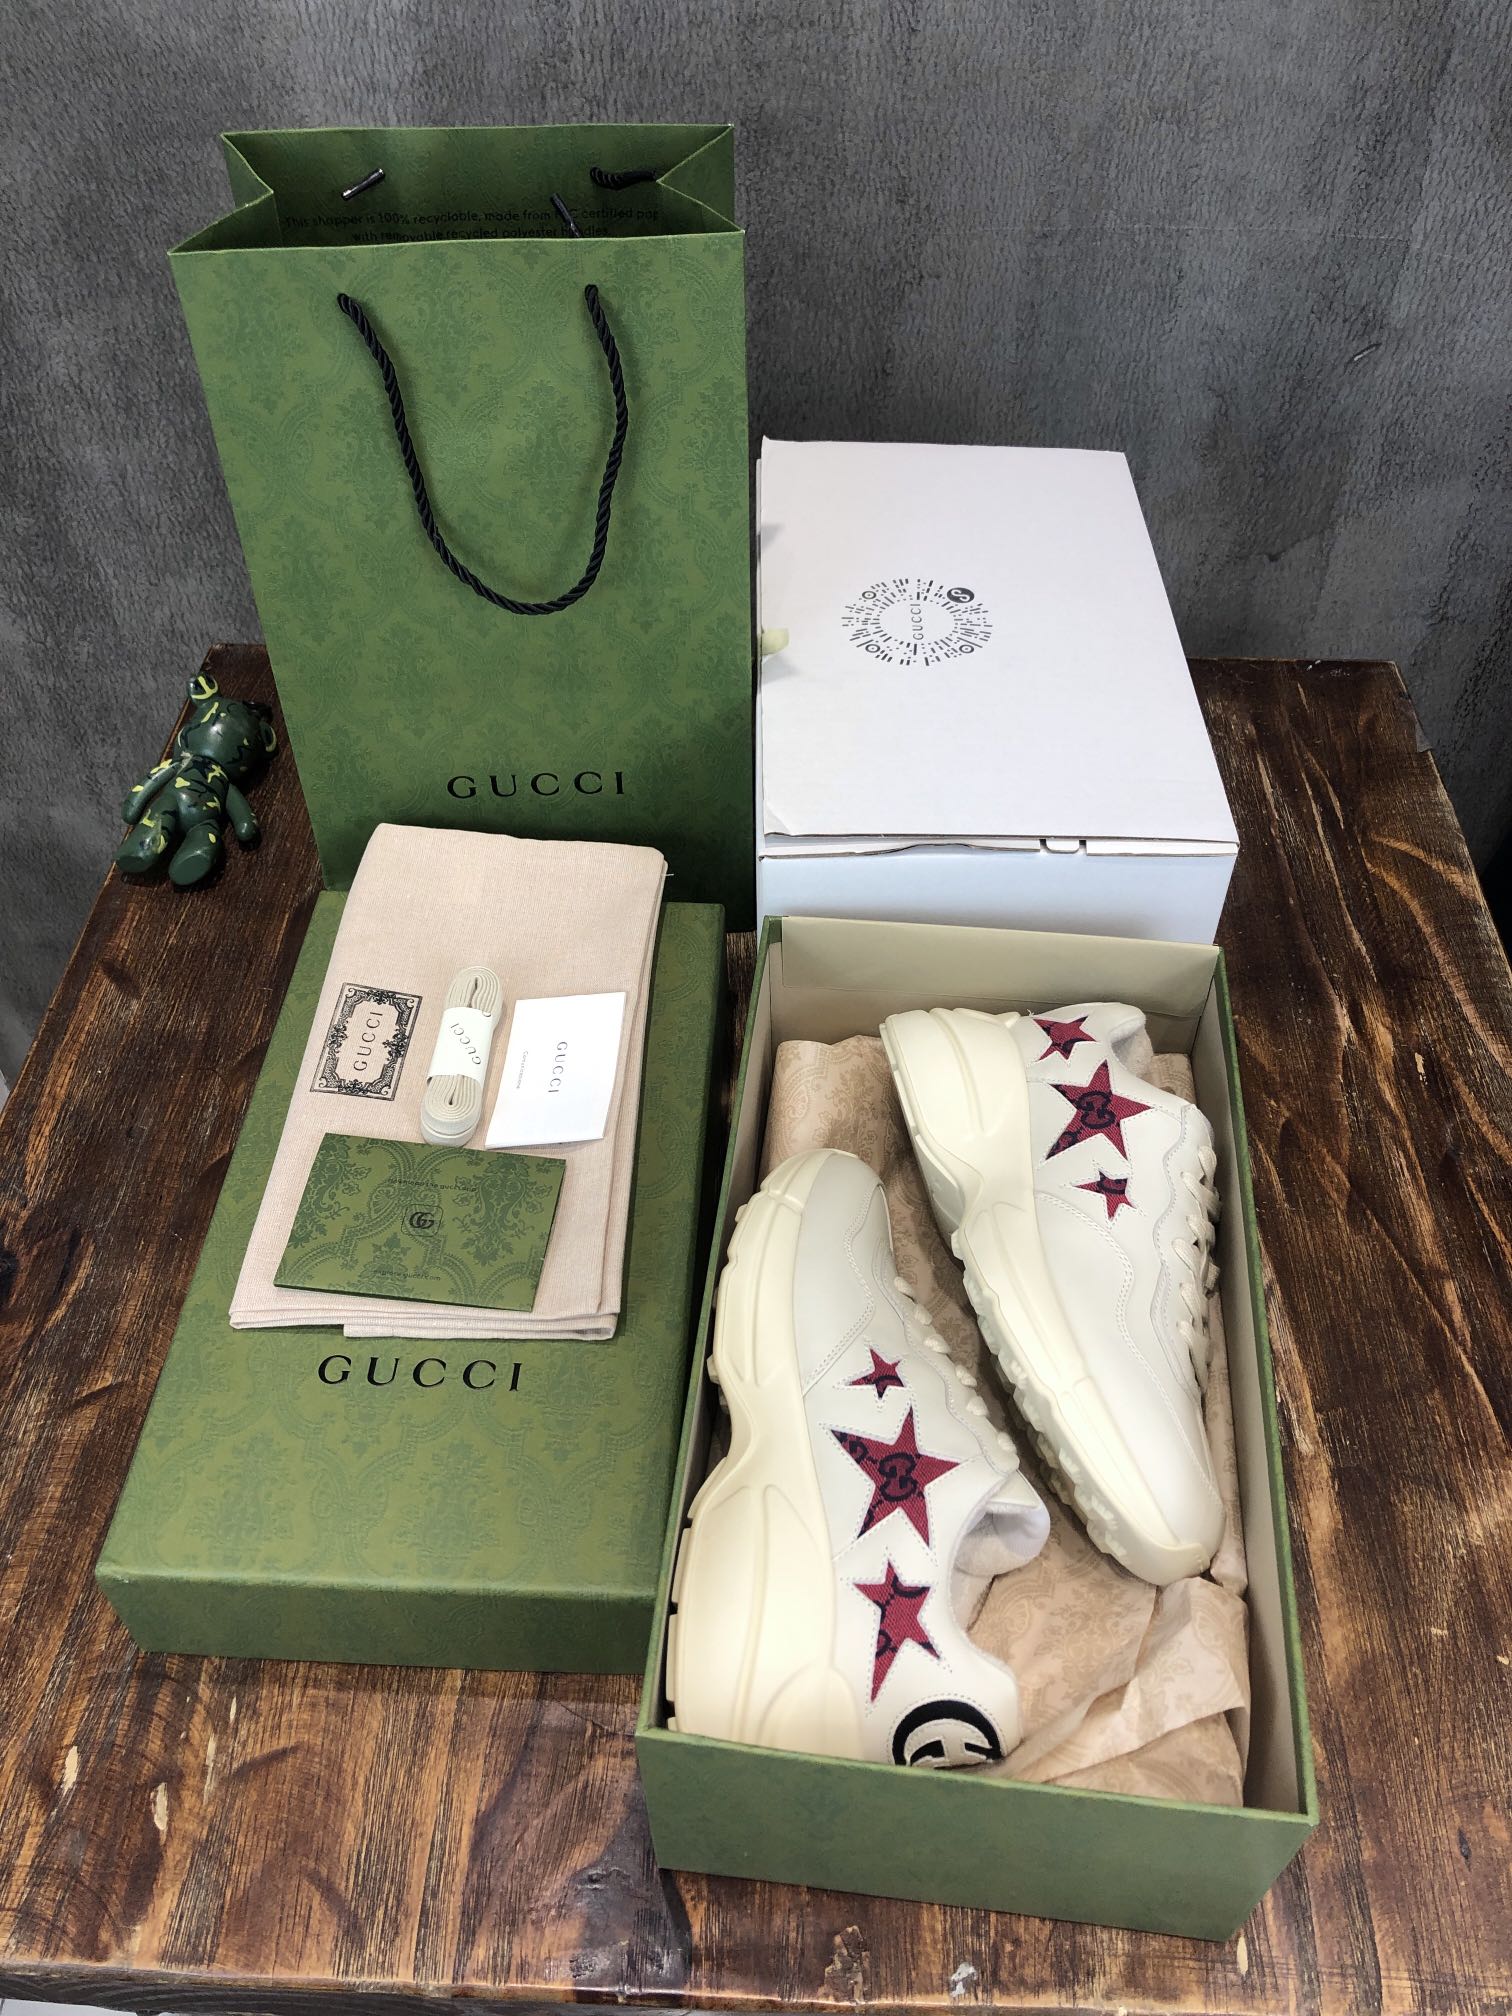 Gucci Rhyton Vintage Trainer Sneaker